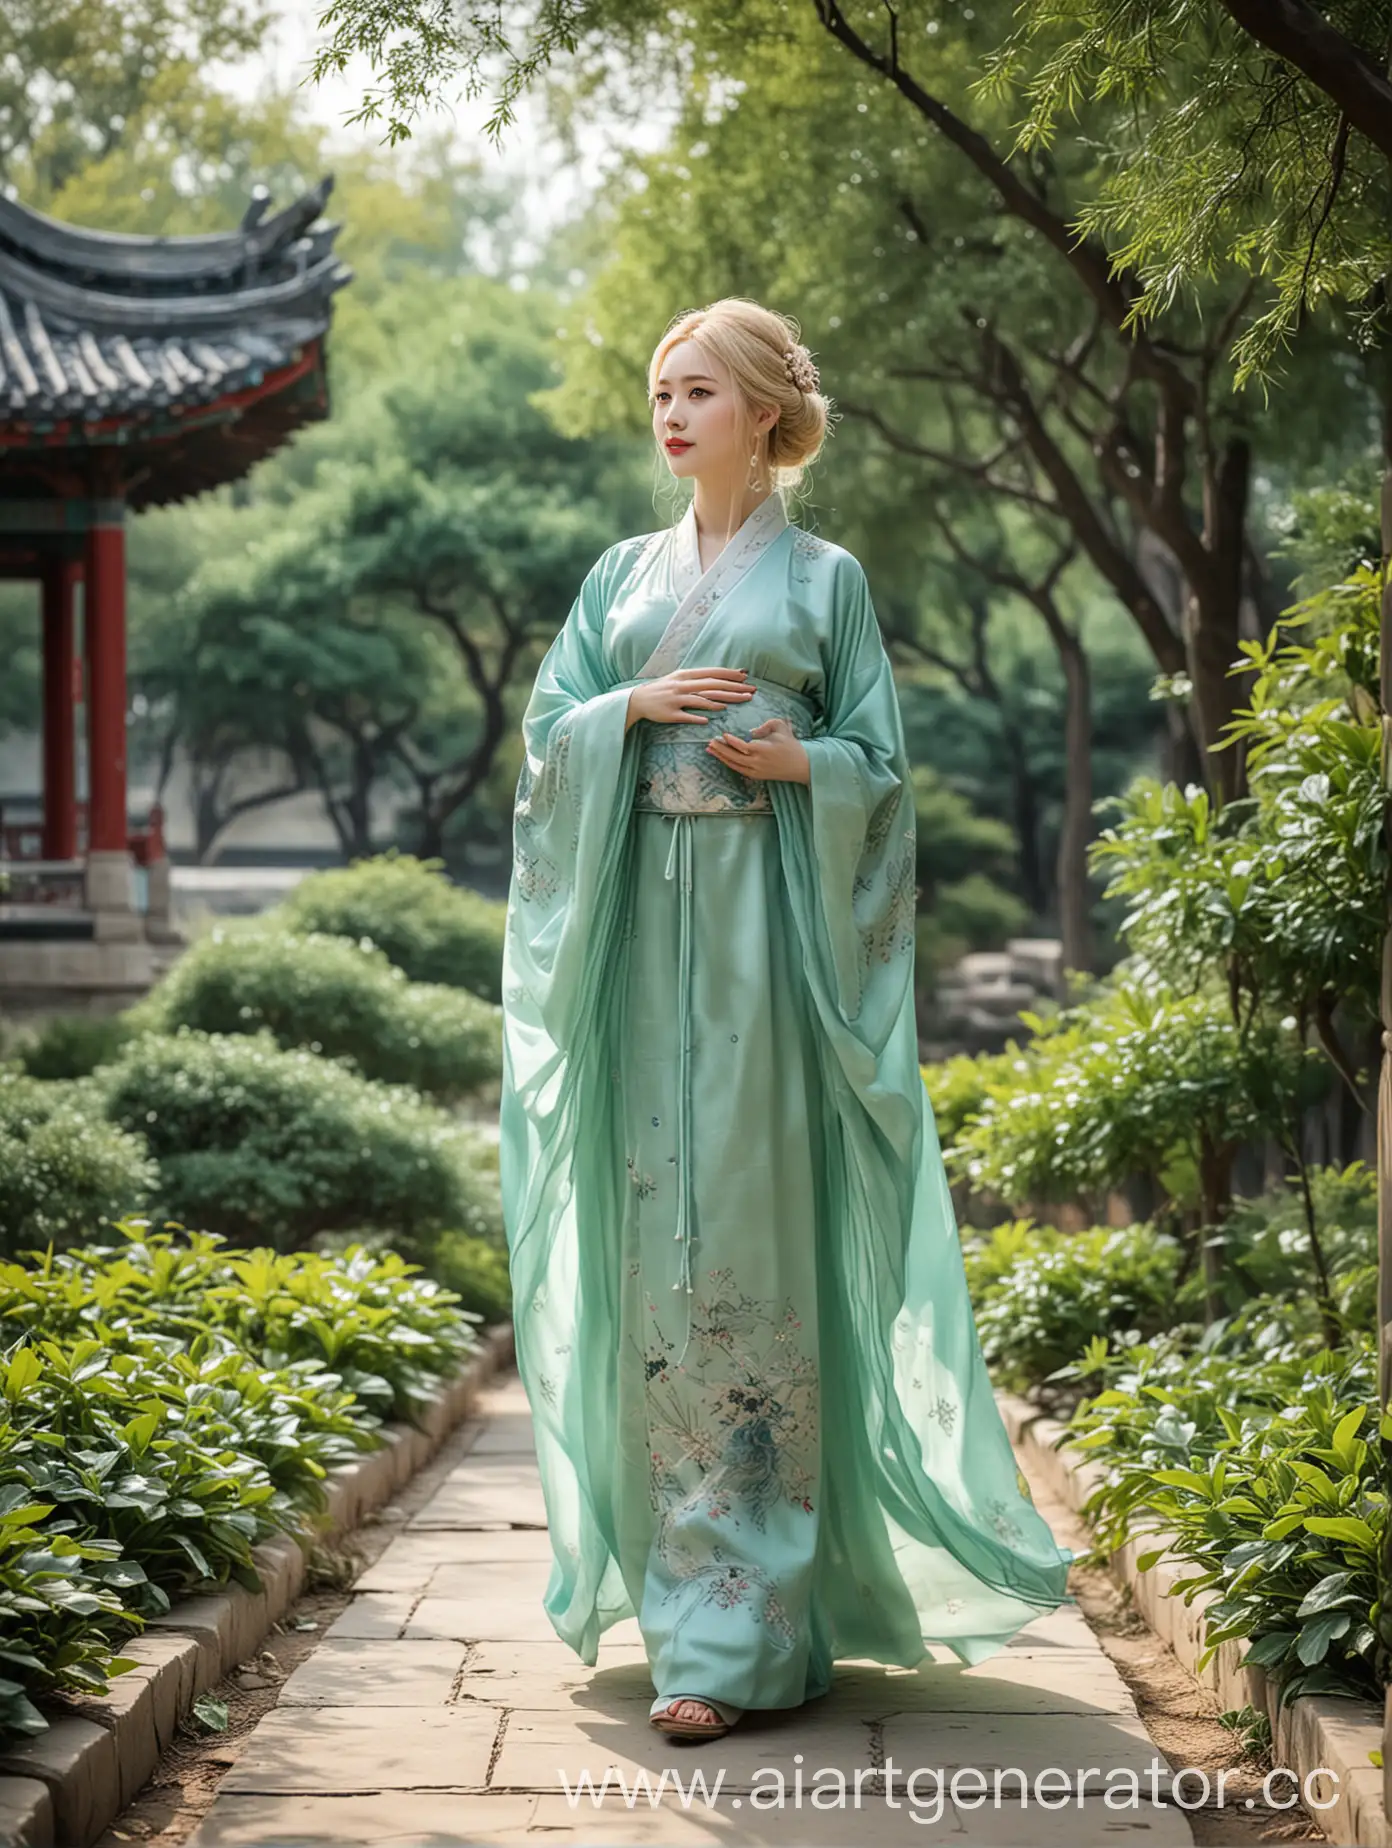 Принцесса древнего Китая, с голубыми глазами, блондинка, беременная, в зеленом ханьфу, гуляет пл саду